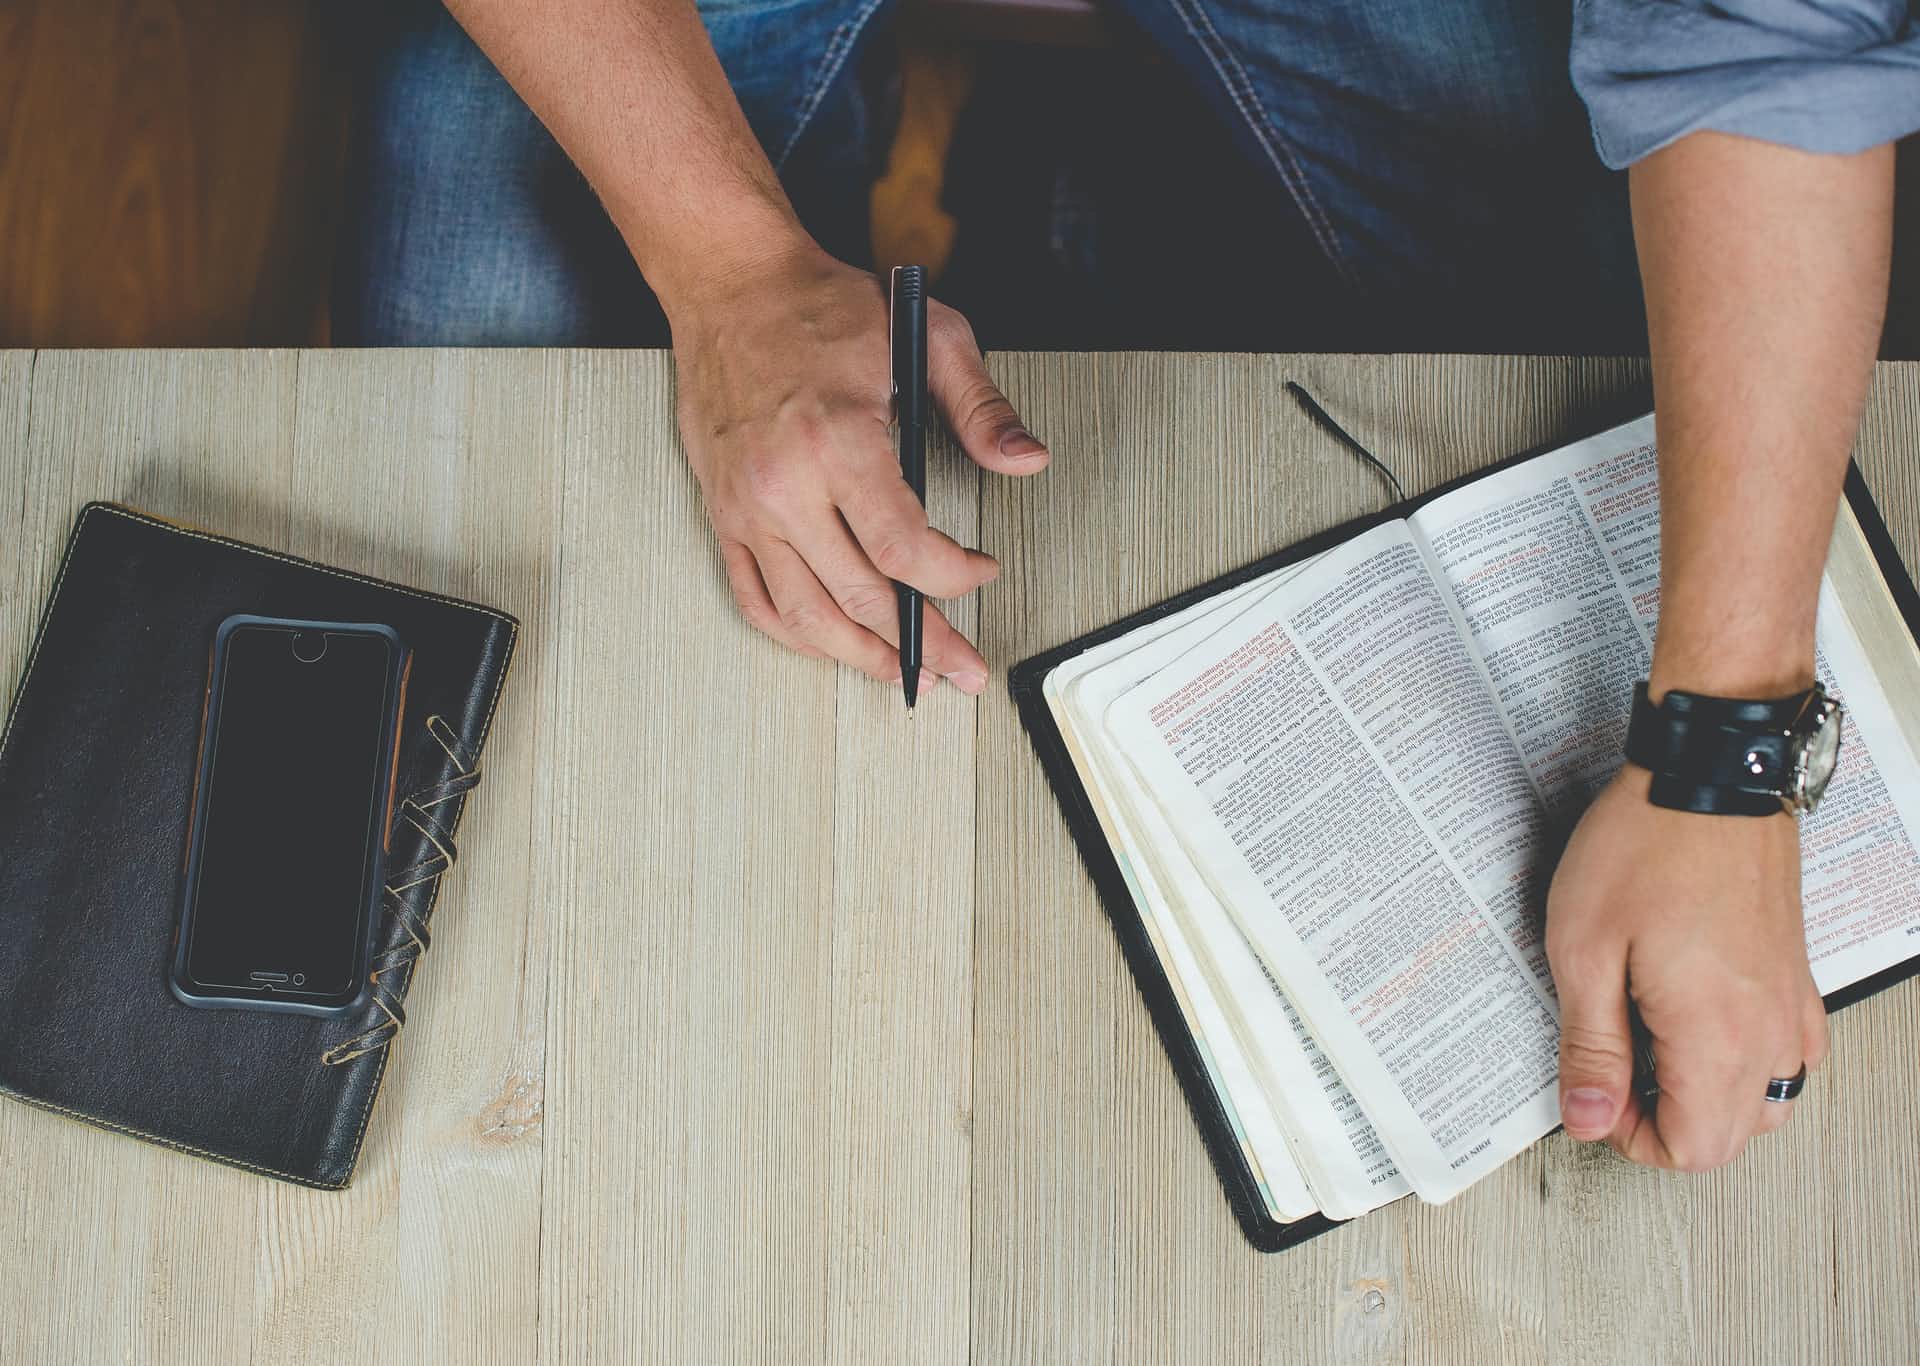 55% Христиан хотят научиться понимать и толковать Библию